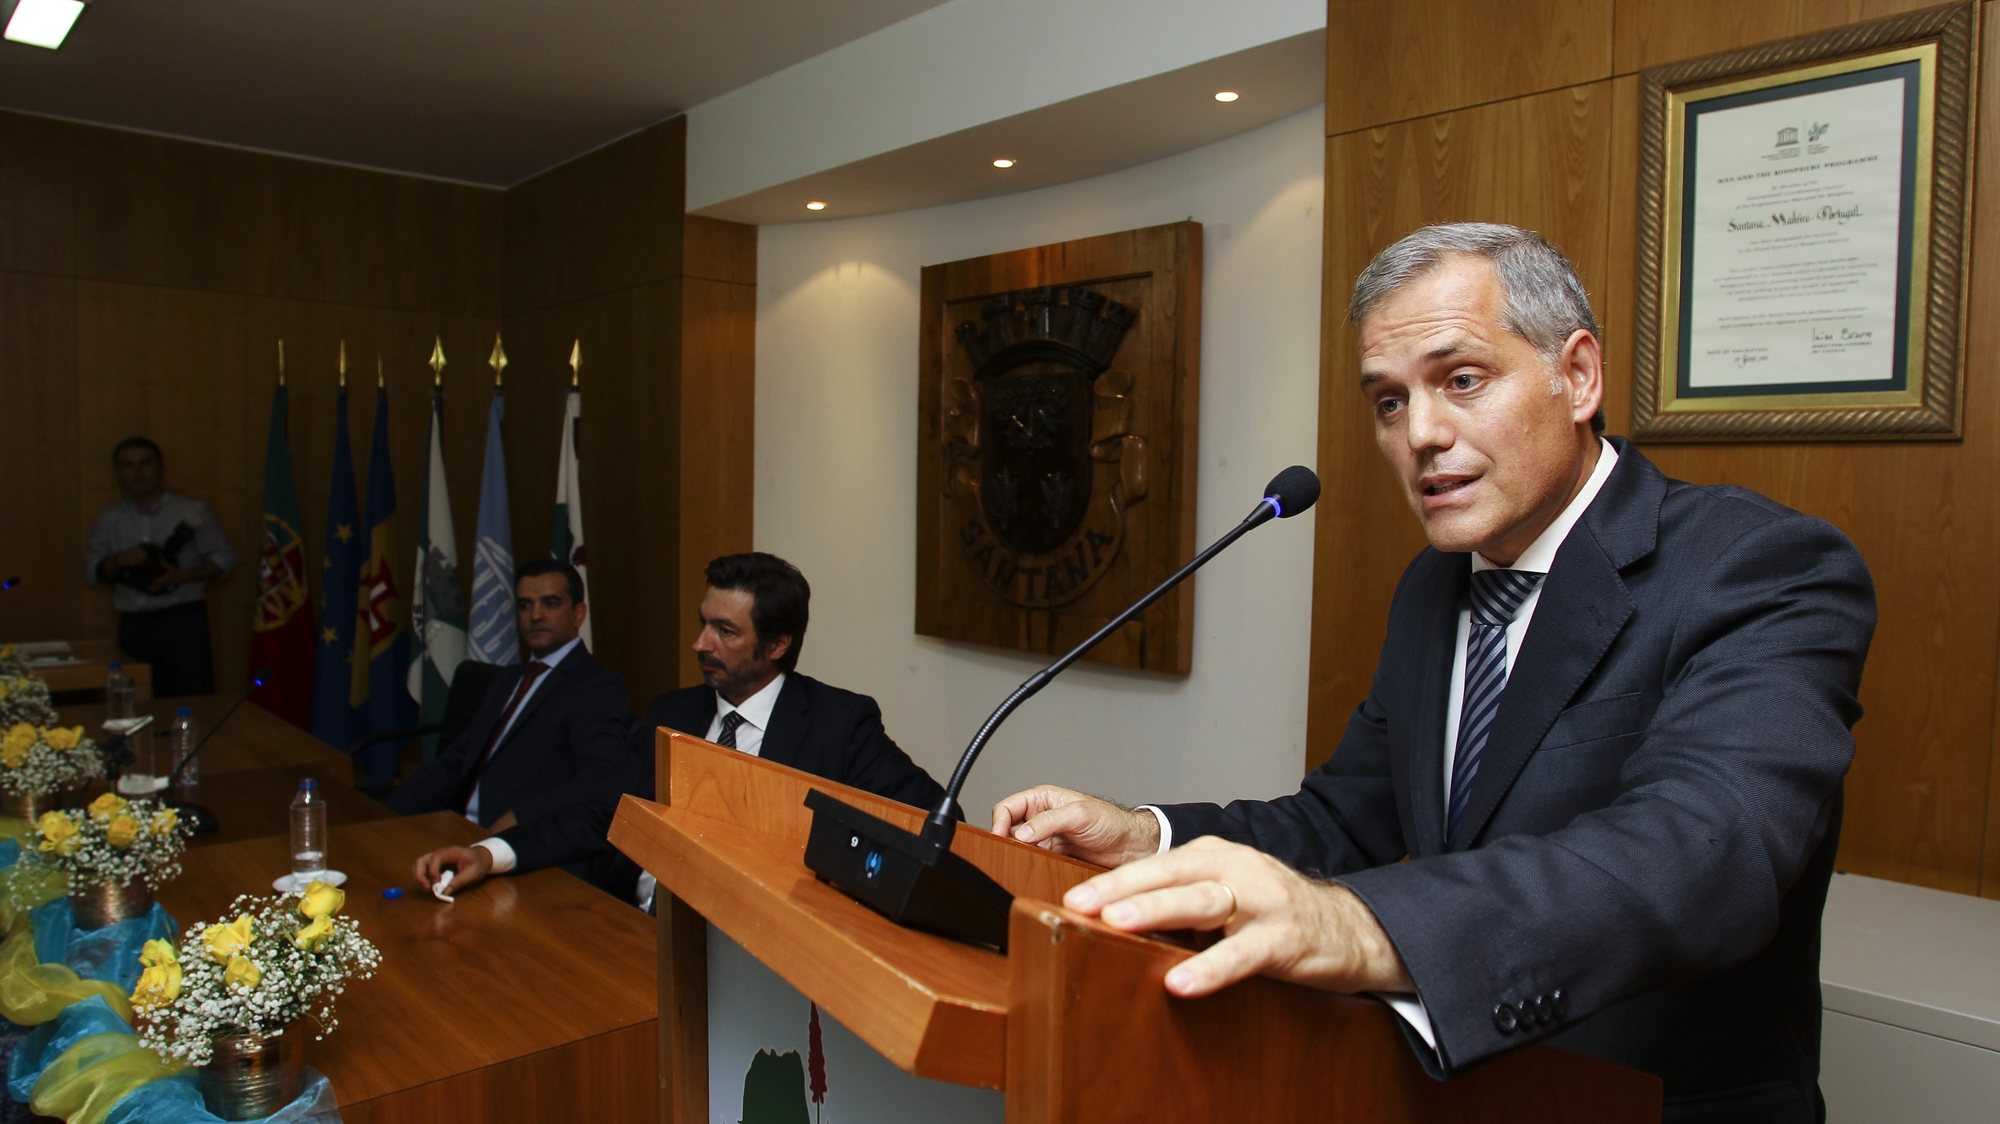 O presidente da Câmara Municipal de Santana, Teófilo Cunha, durante a posse dos órgãos autárquicos da cidade de Santana, 20 de outubro de 2017. HOMEM DE GOUVEIA/LUSA